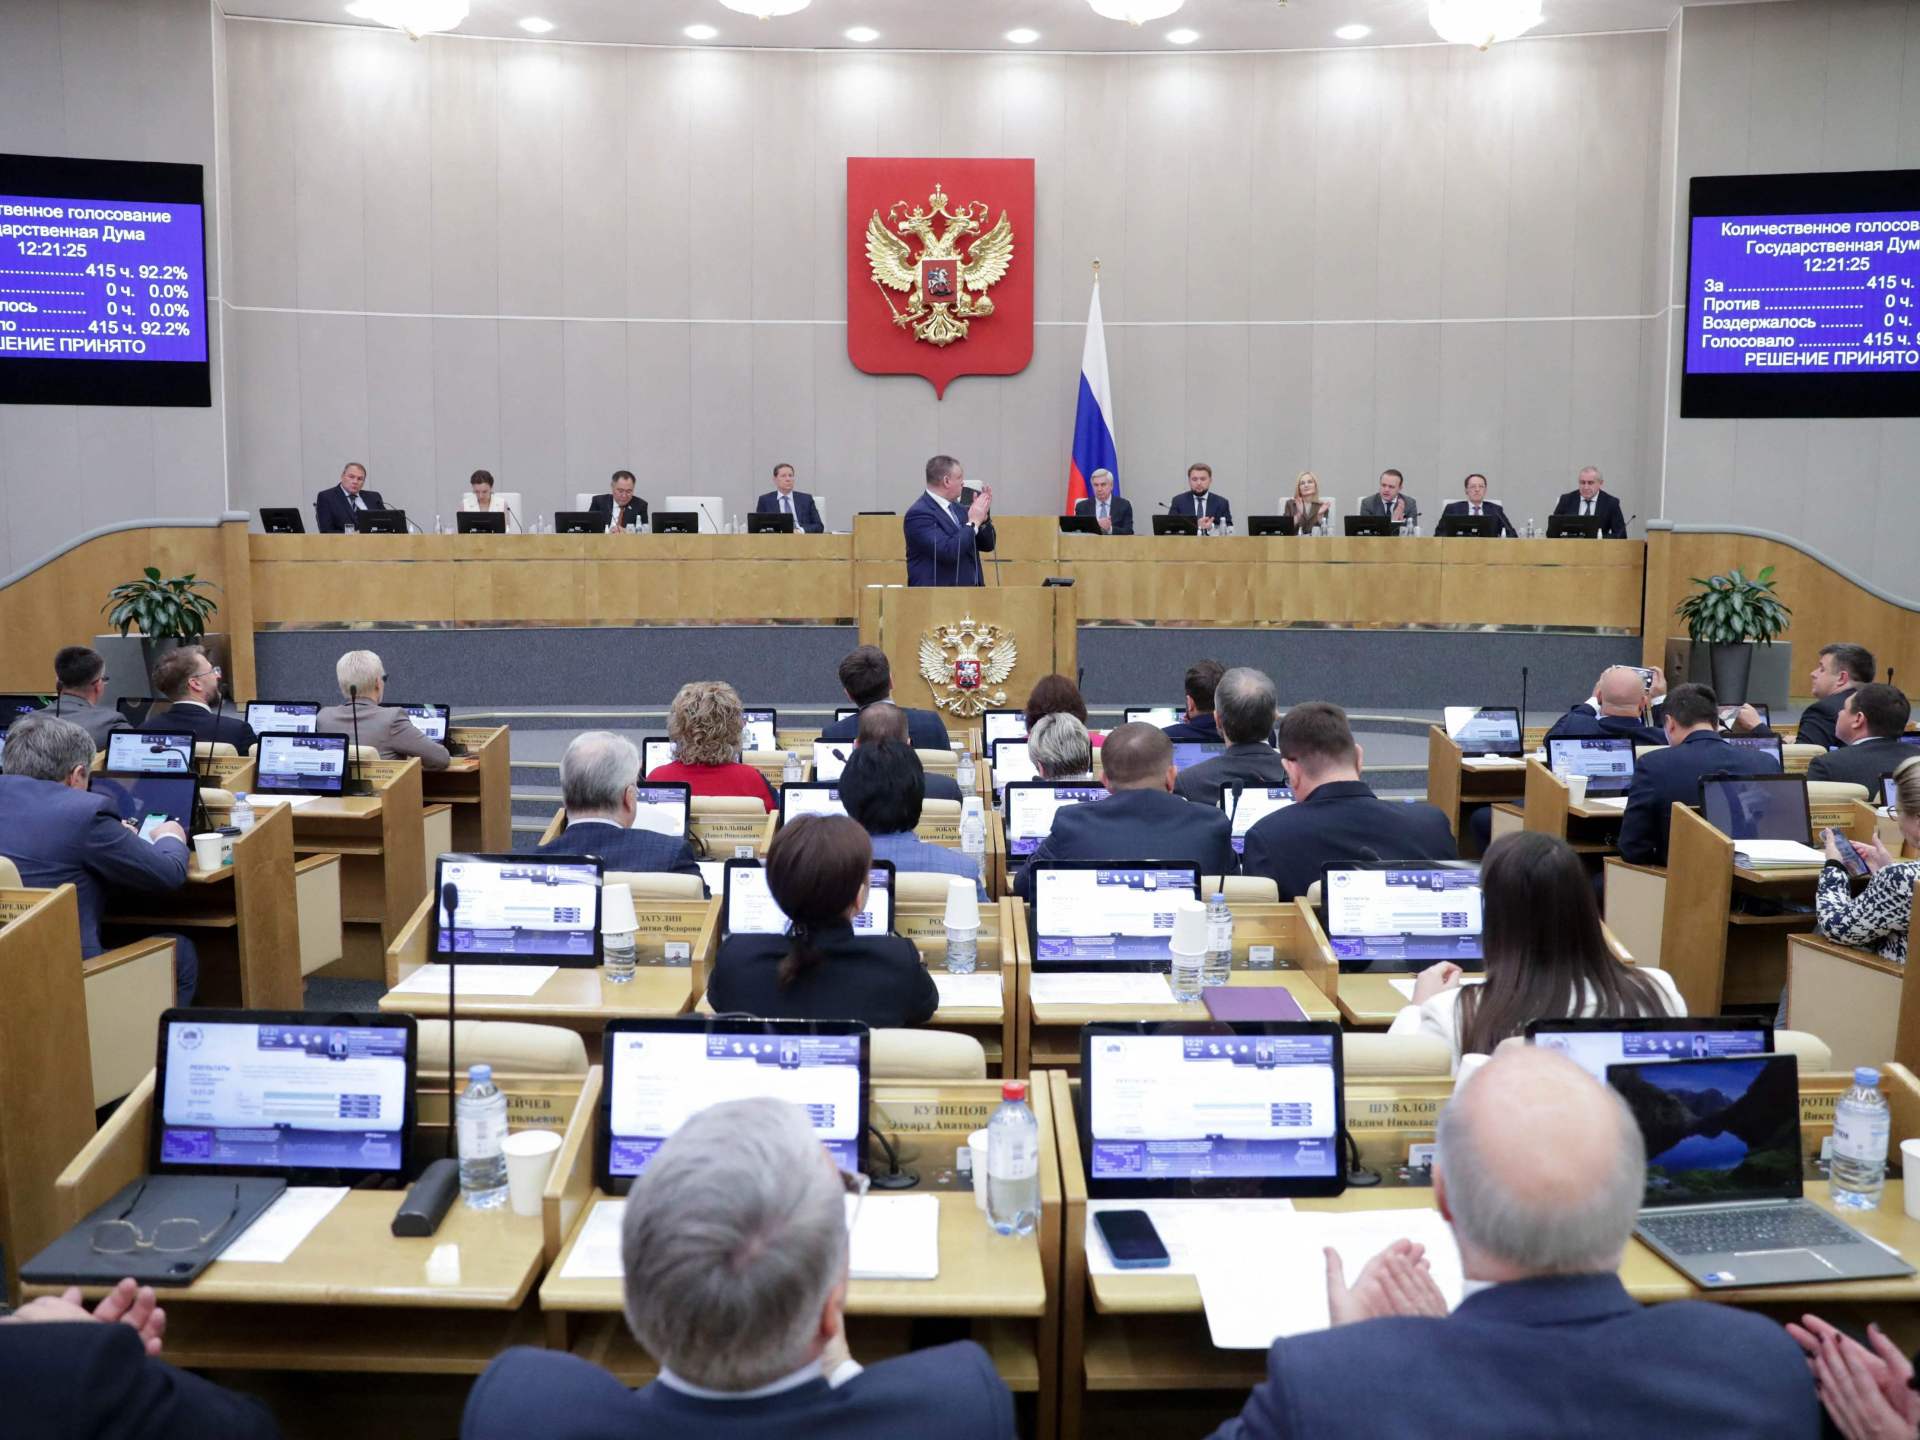 روسيا تنسحب من معاهدة حظر التجارب النووية | أخبار – البوكس نيوز